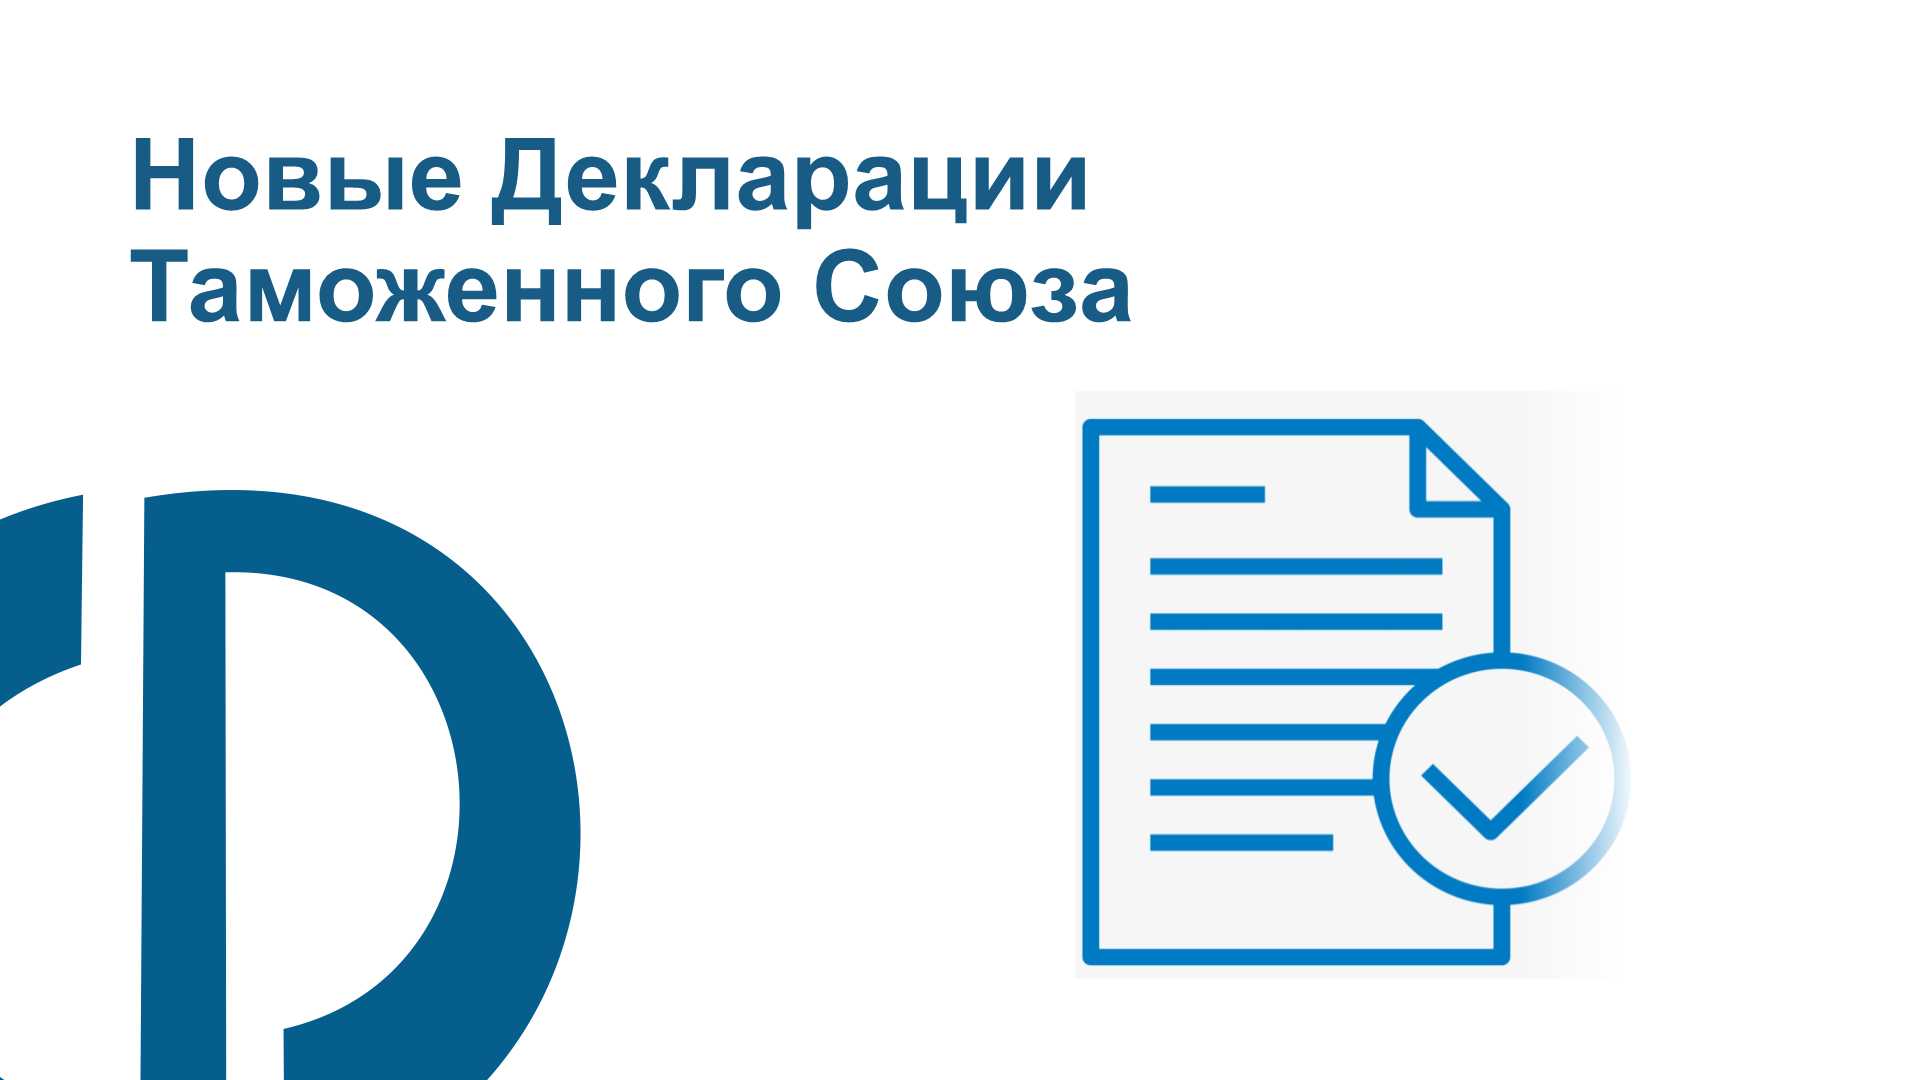 Обновились декларации Таможенного Союза (ФСТ-03В1, ФКГ102.1 и ФКГ102.2)